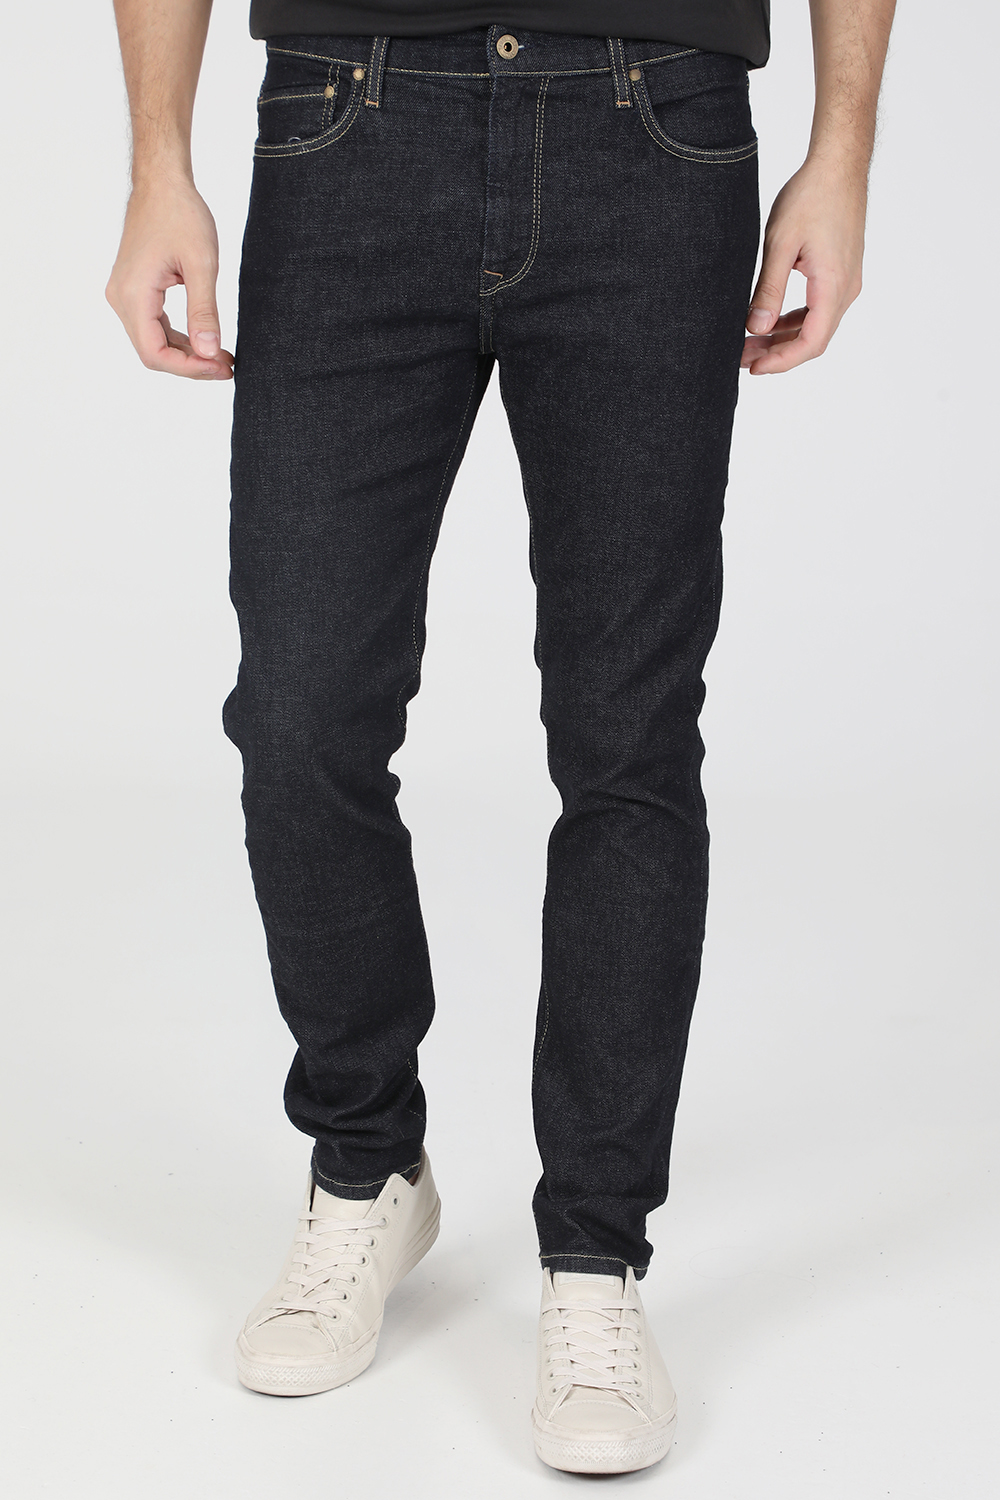 Ανδρικά/Ρούχα/Τζίν/Straight PEPE JEANS - Ανδρικό jean παντελόνι PEPE JEANS CRANE μπλε